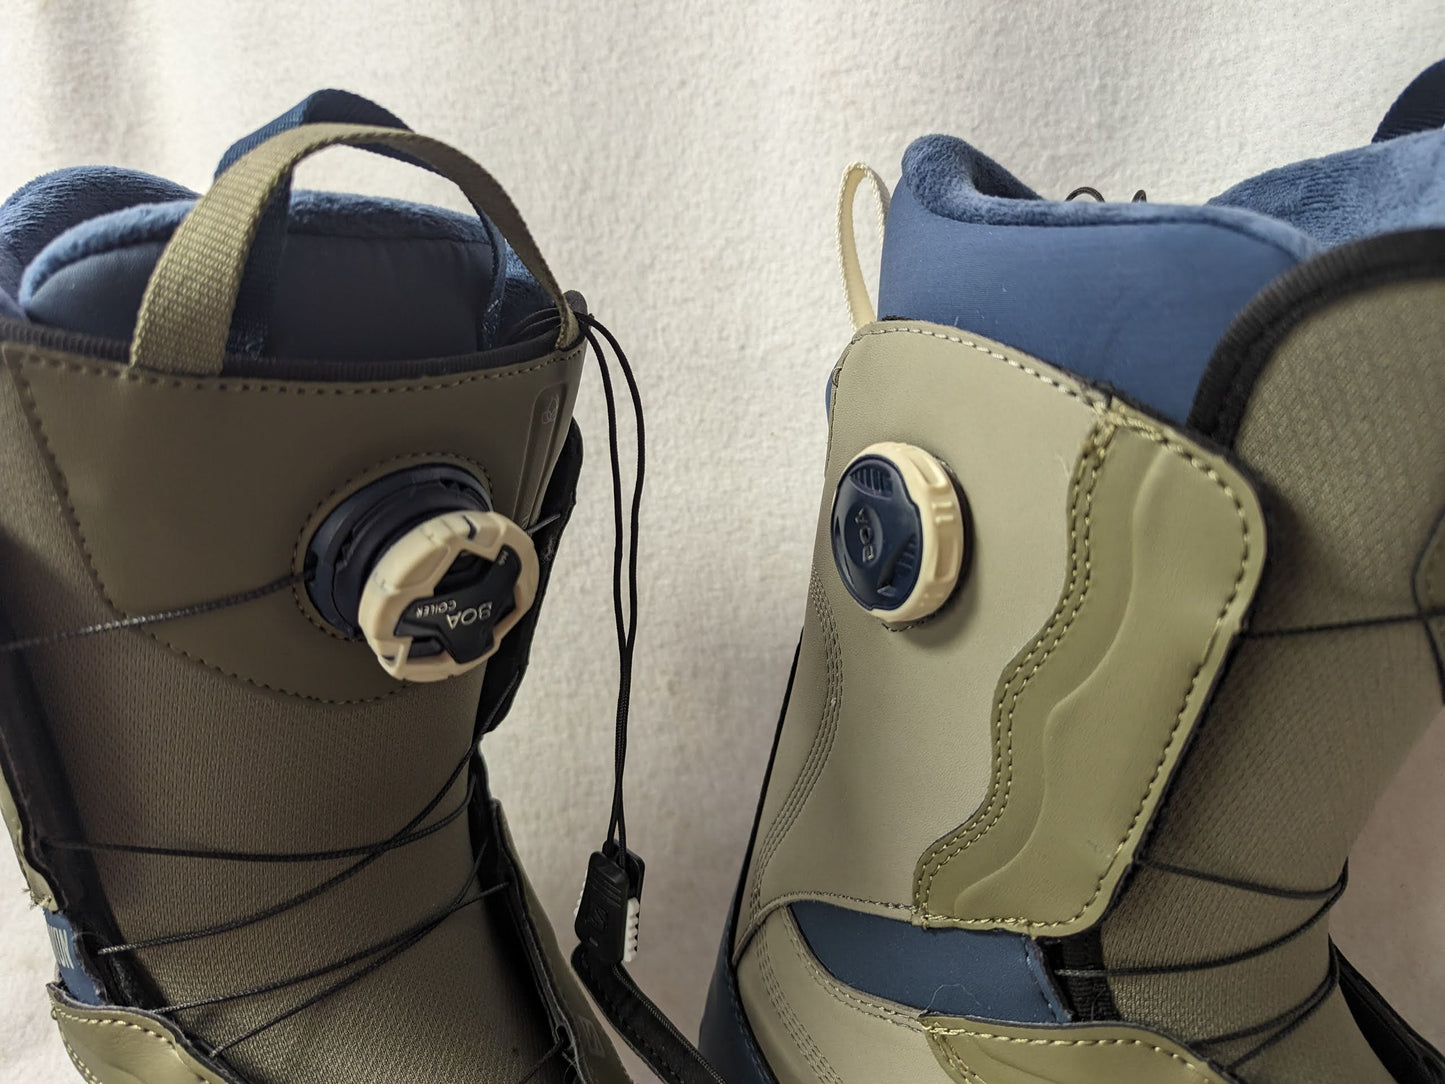 Salomon Ivy Boa SJ Boa Snowboard Boots Size 7 Color Blue Condition Used